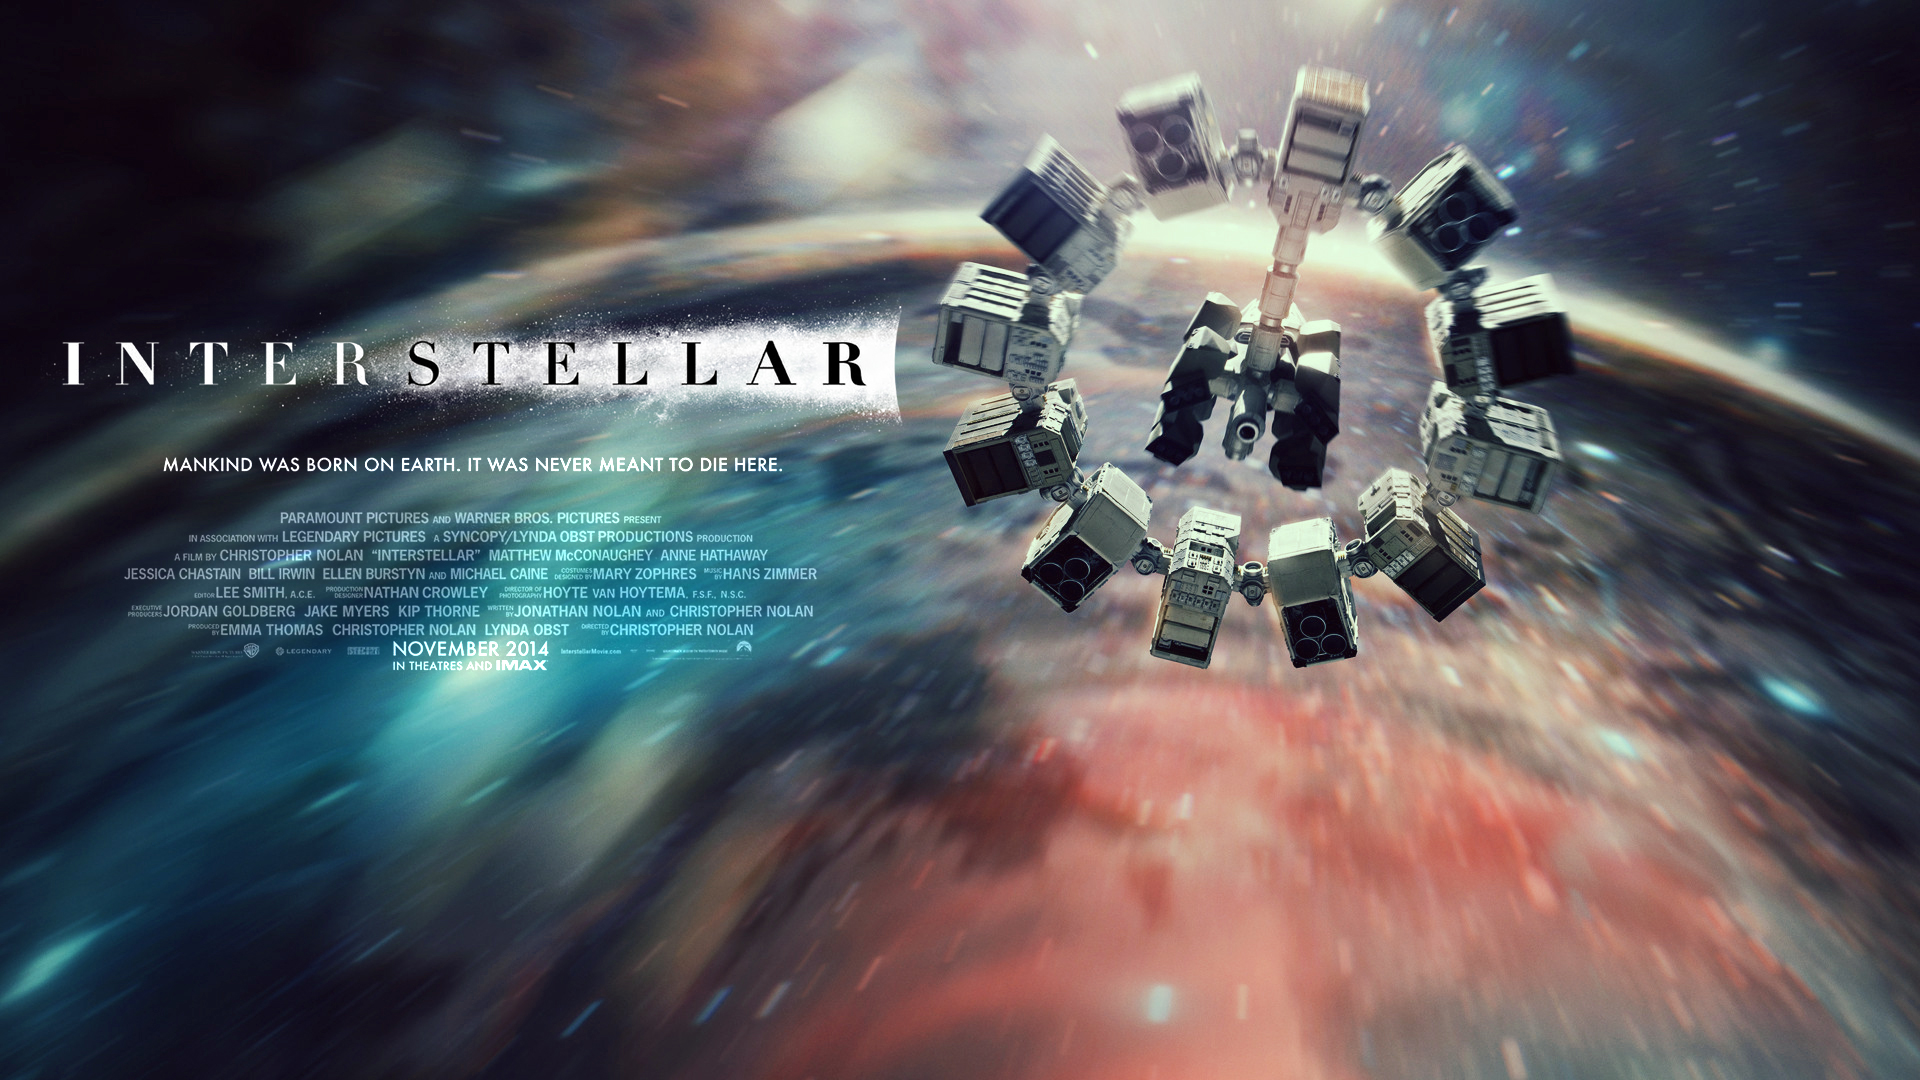 interstellar-movie-review-7e793e39-e87d-4def-982a-f43bcbc48098